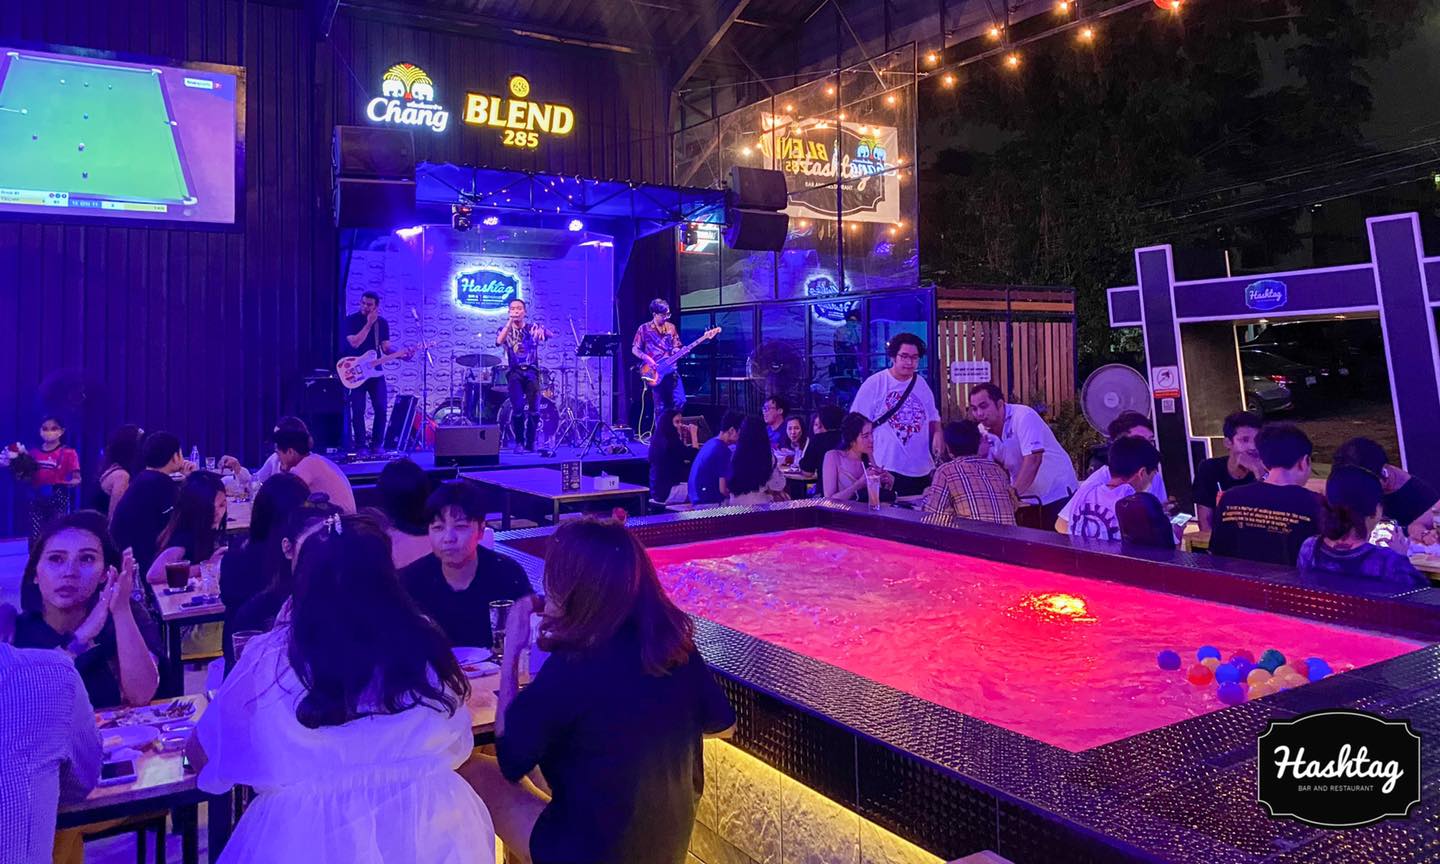 แฮชแท็ก บาร์  แอนด์ เรสเทอรองต์ (Hashtag bar&restaurant) : กรุงเทพมหานคร (Bangkok)